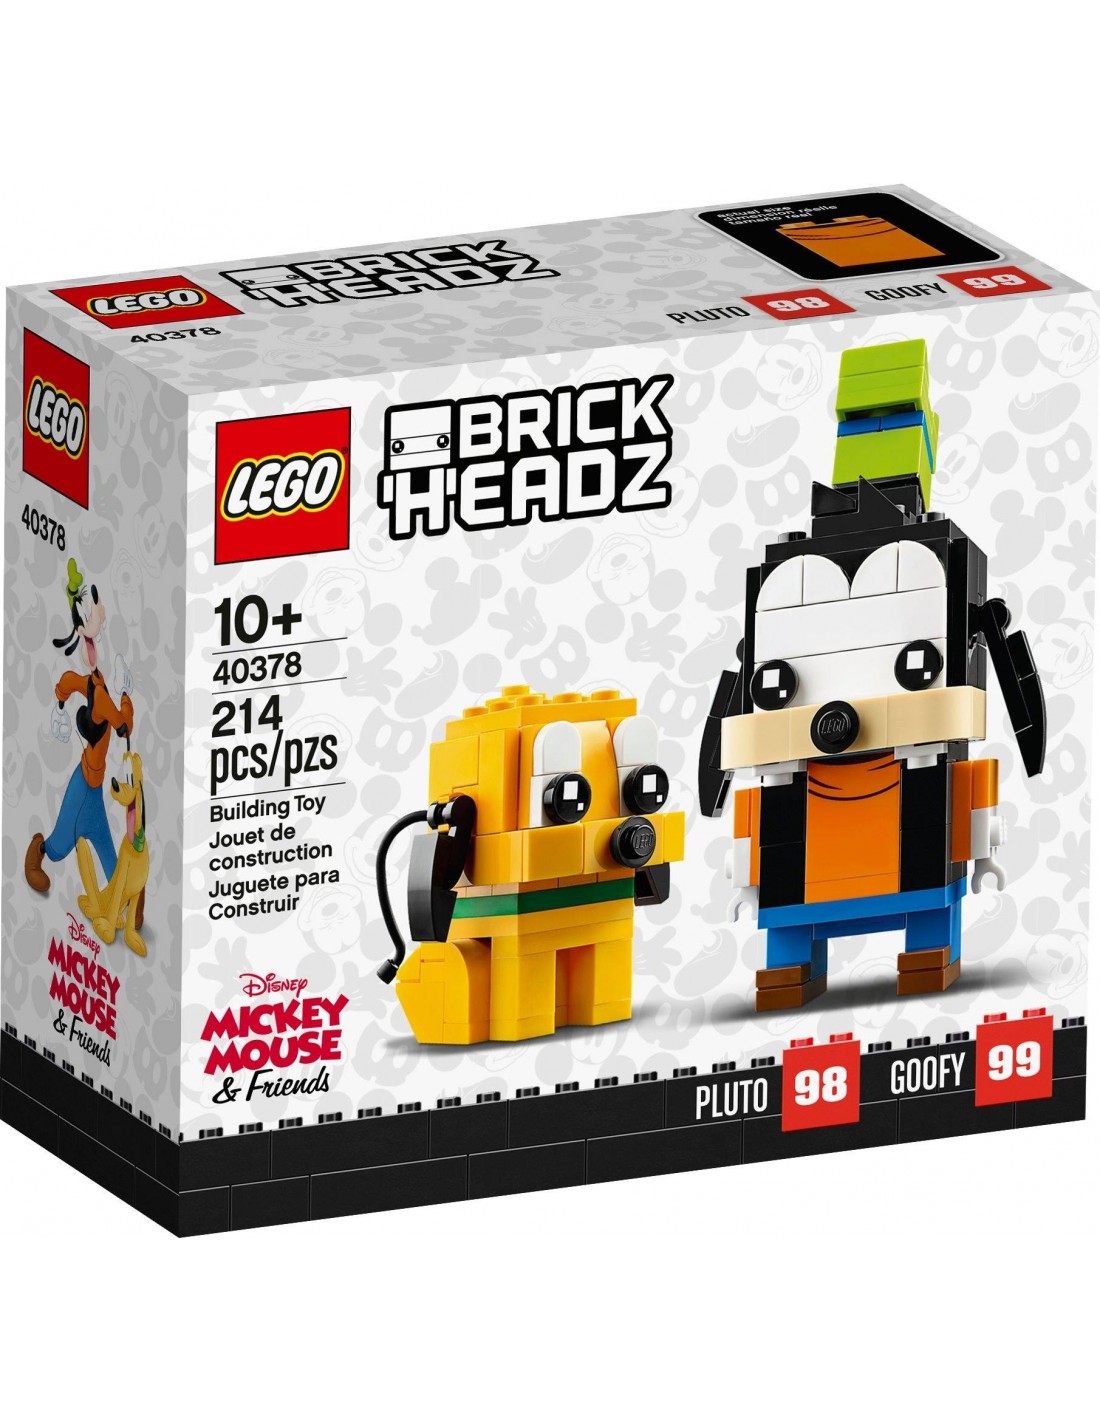 LEGO BrickHeadz - La statue de la Liberté - 40367 - En stock chez